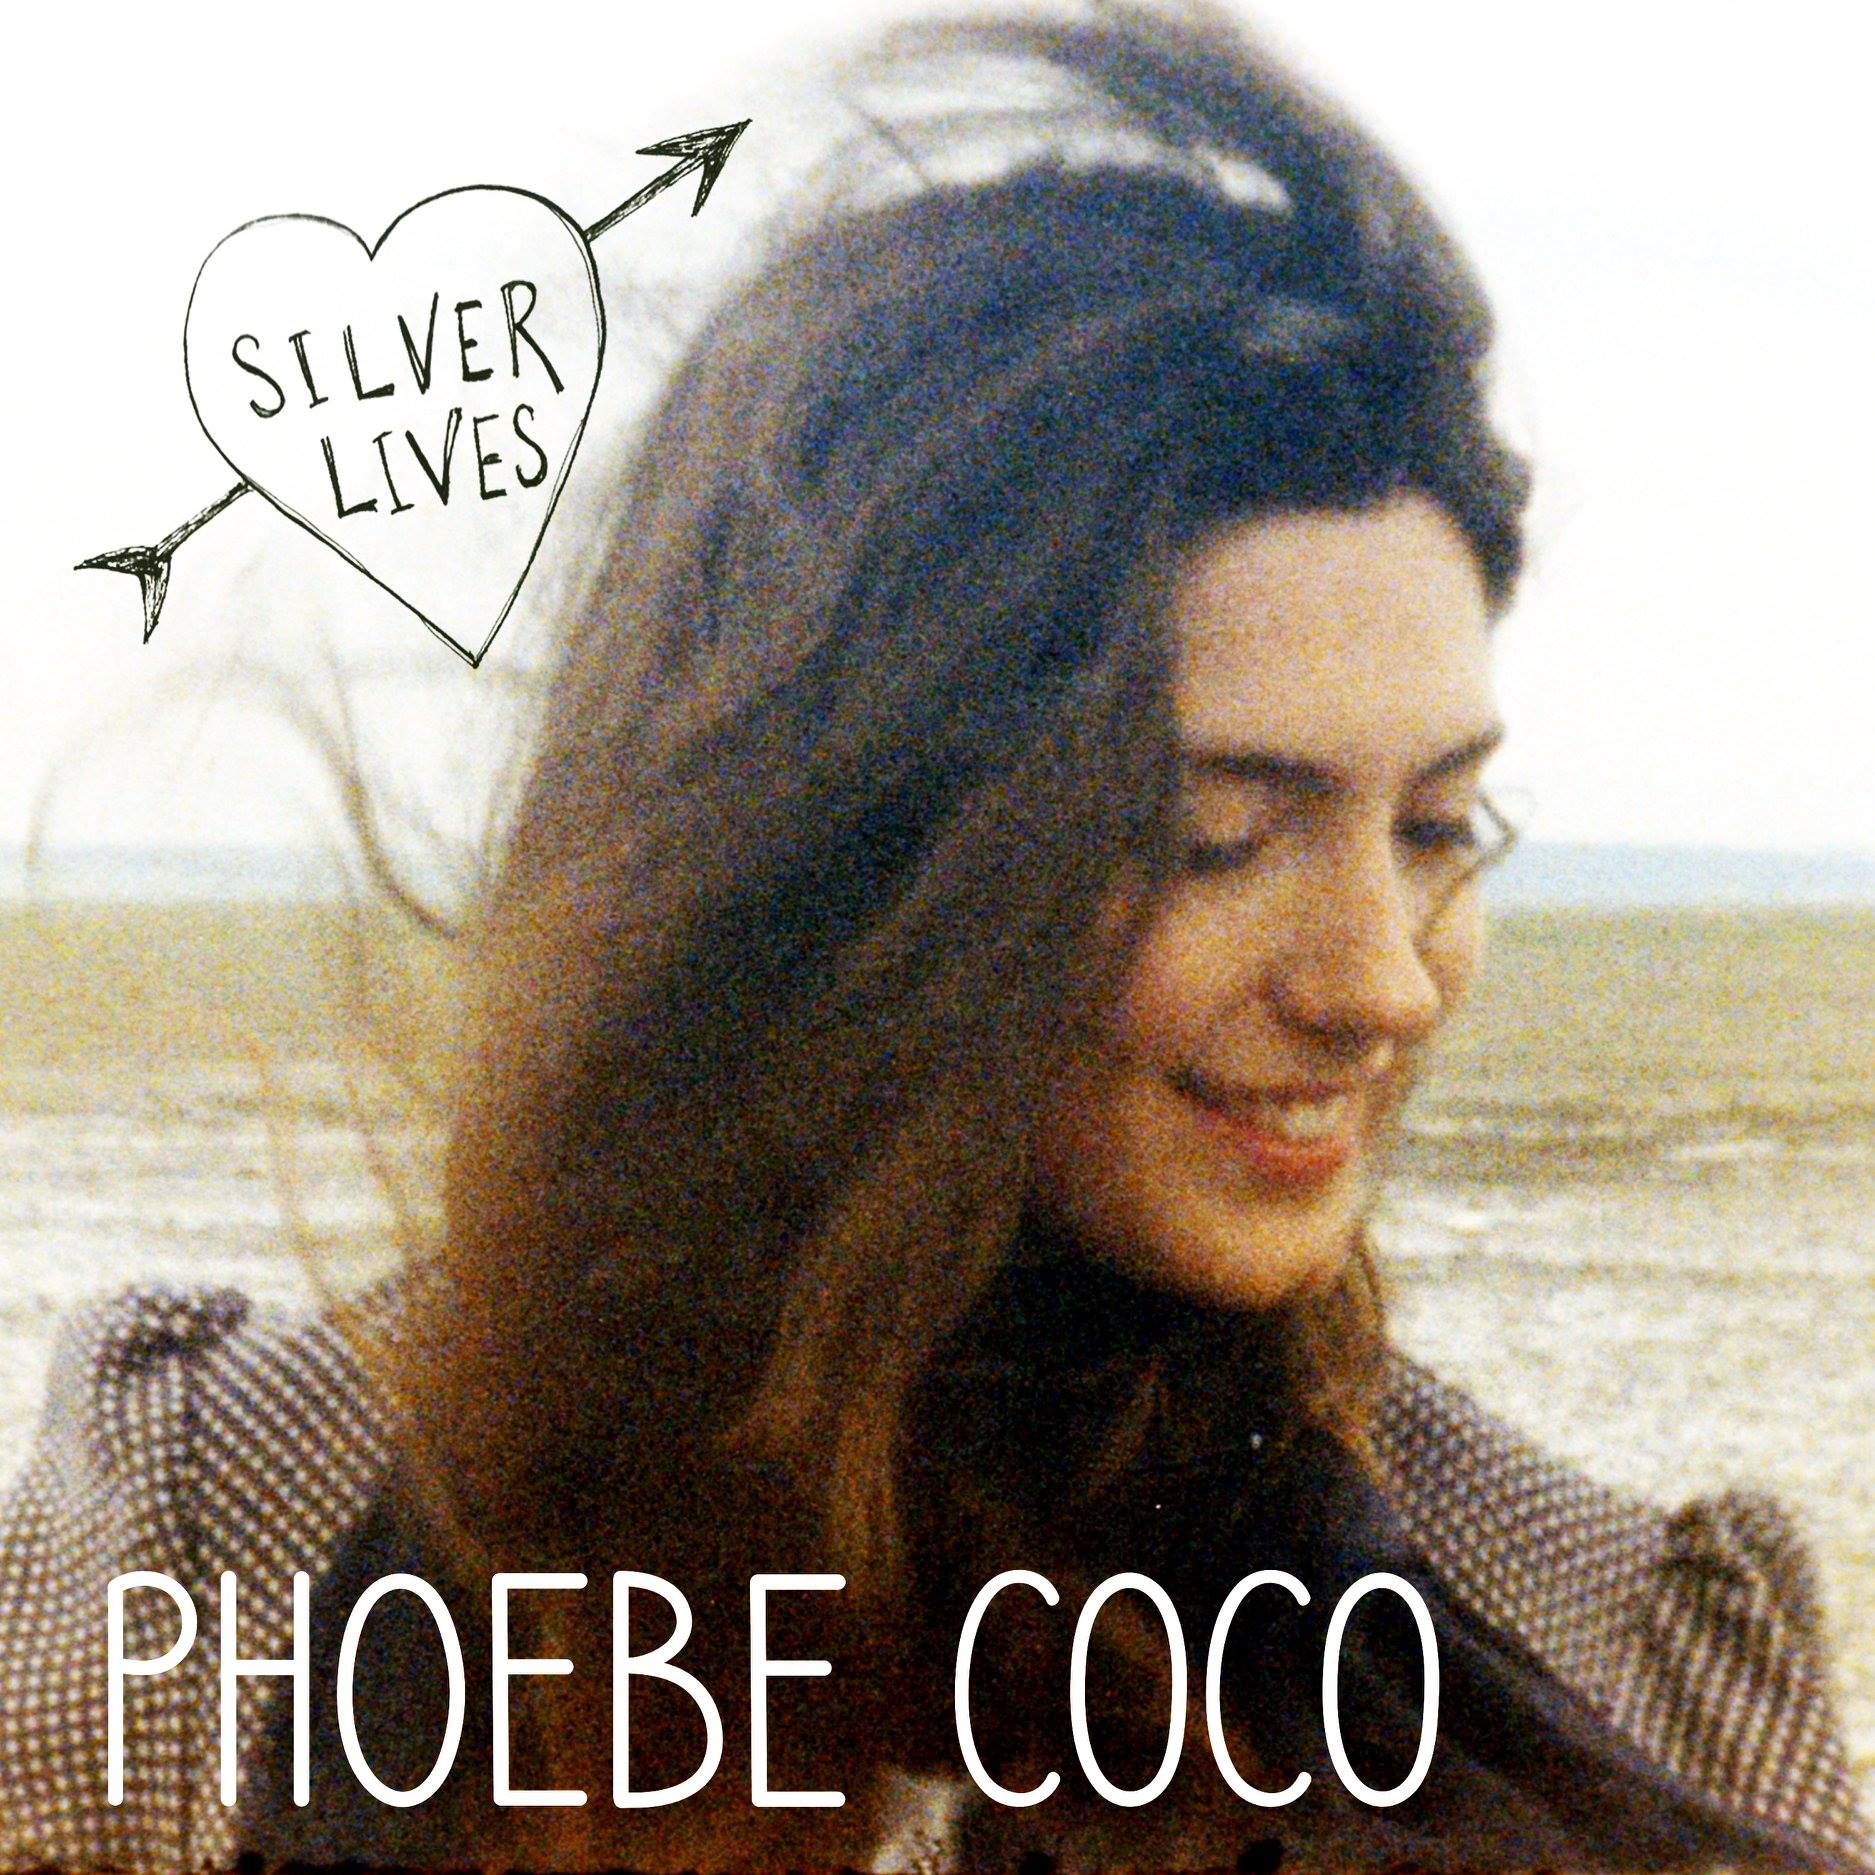 Phoebe Coco